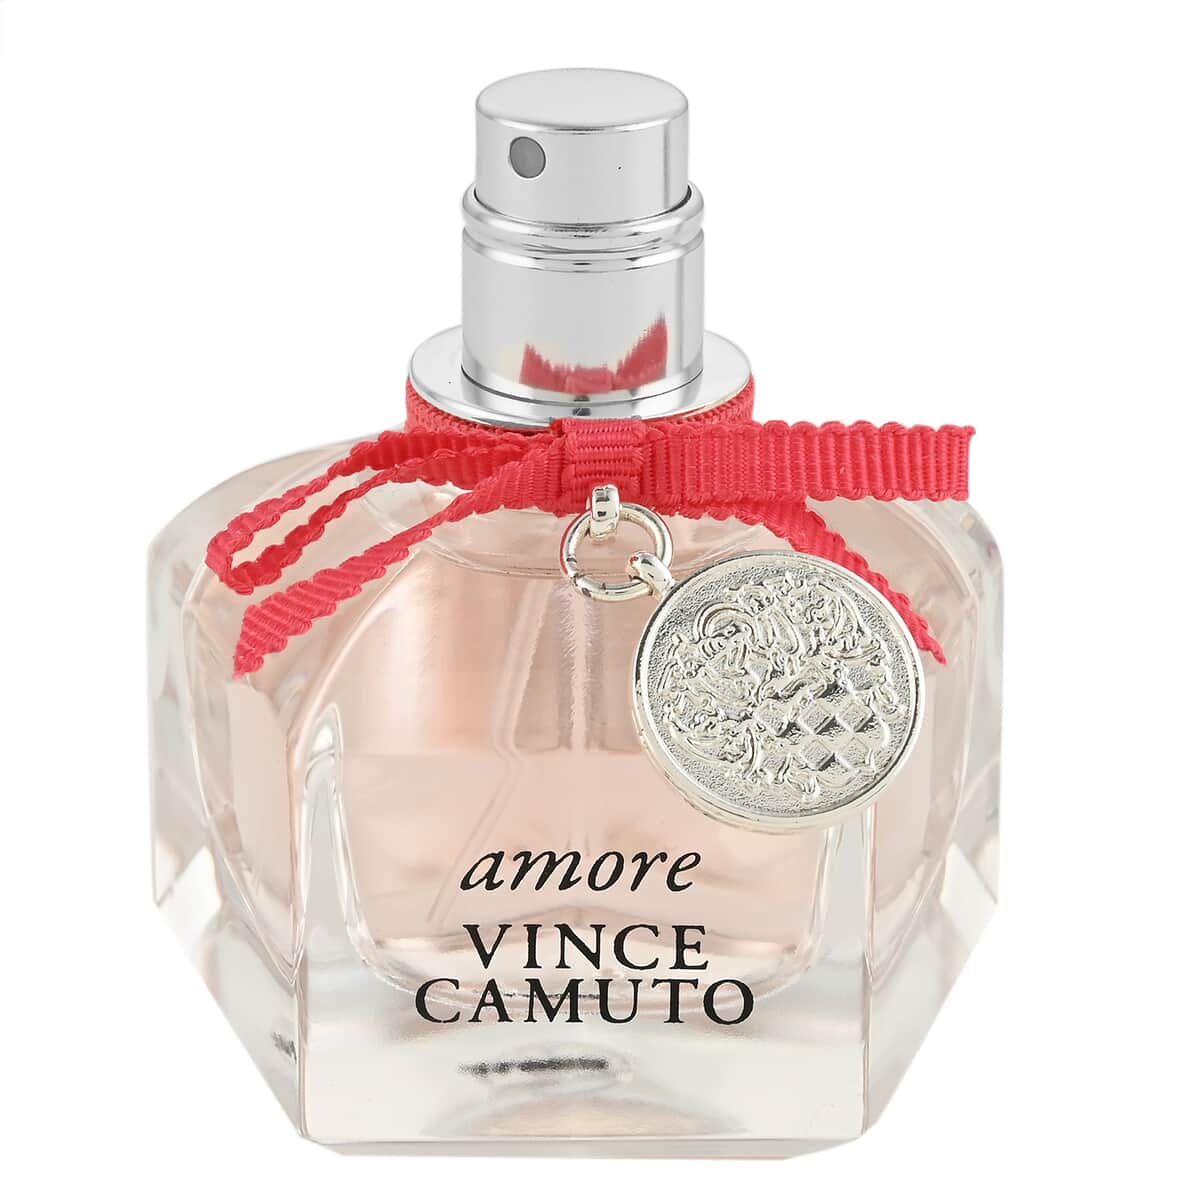 Buy Vince Camuto AMORE Eau De Parfum 1oz